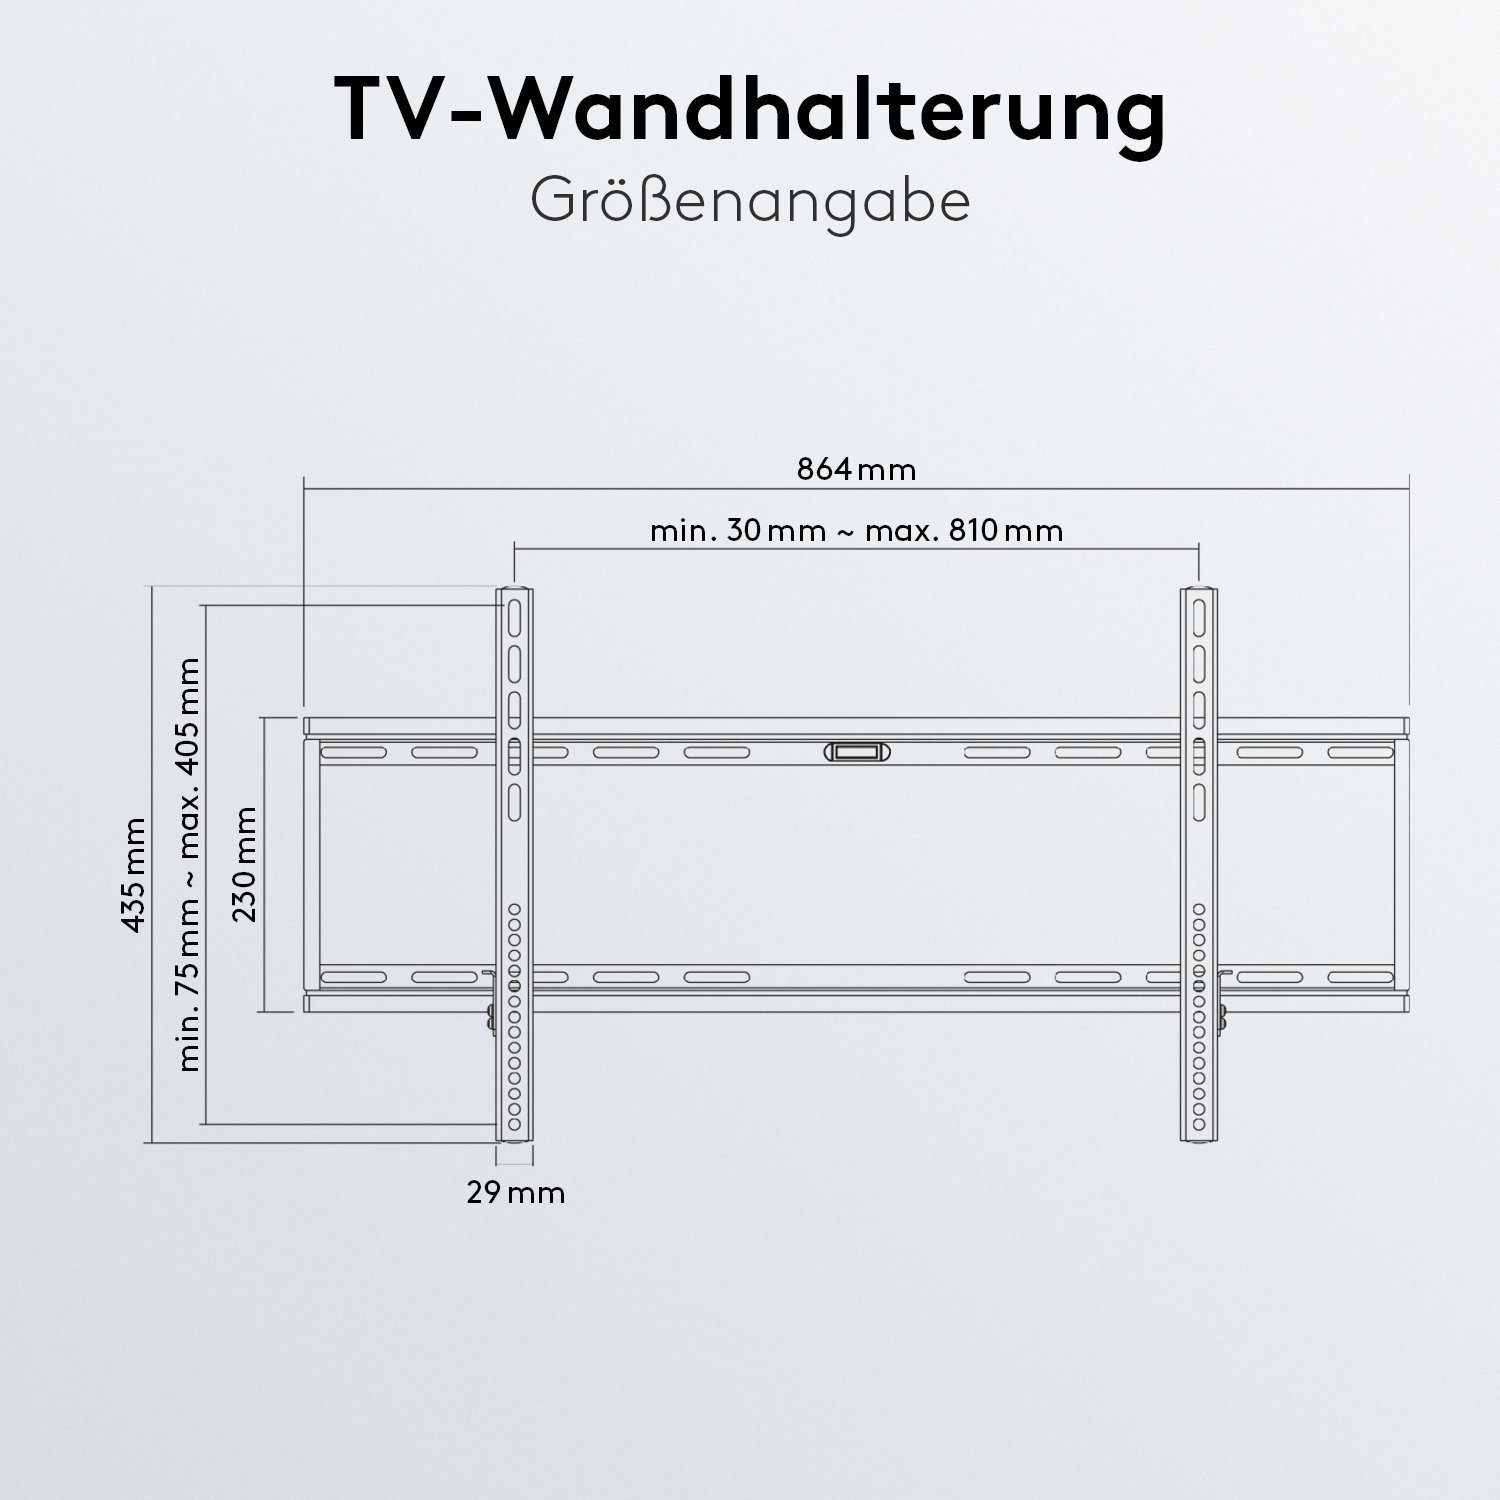 Automatic Zoll, TILT & Schwarz) Click-in Montage / inkl. Zubehör, TV-Wandhalterung, Release neigbar TV-Wandhalterung Pro (bis 100,00 Goobay / Easy 12°